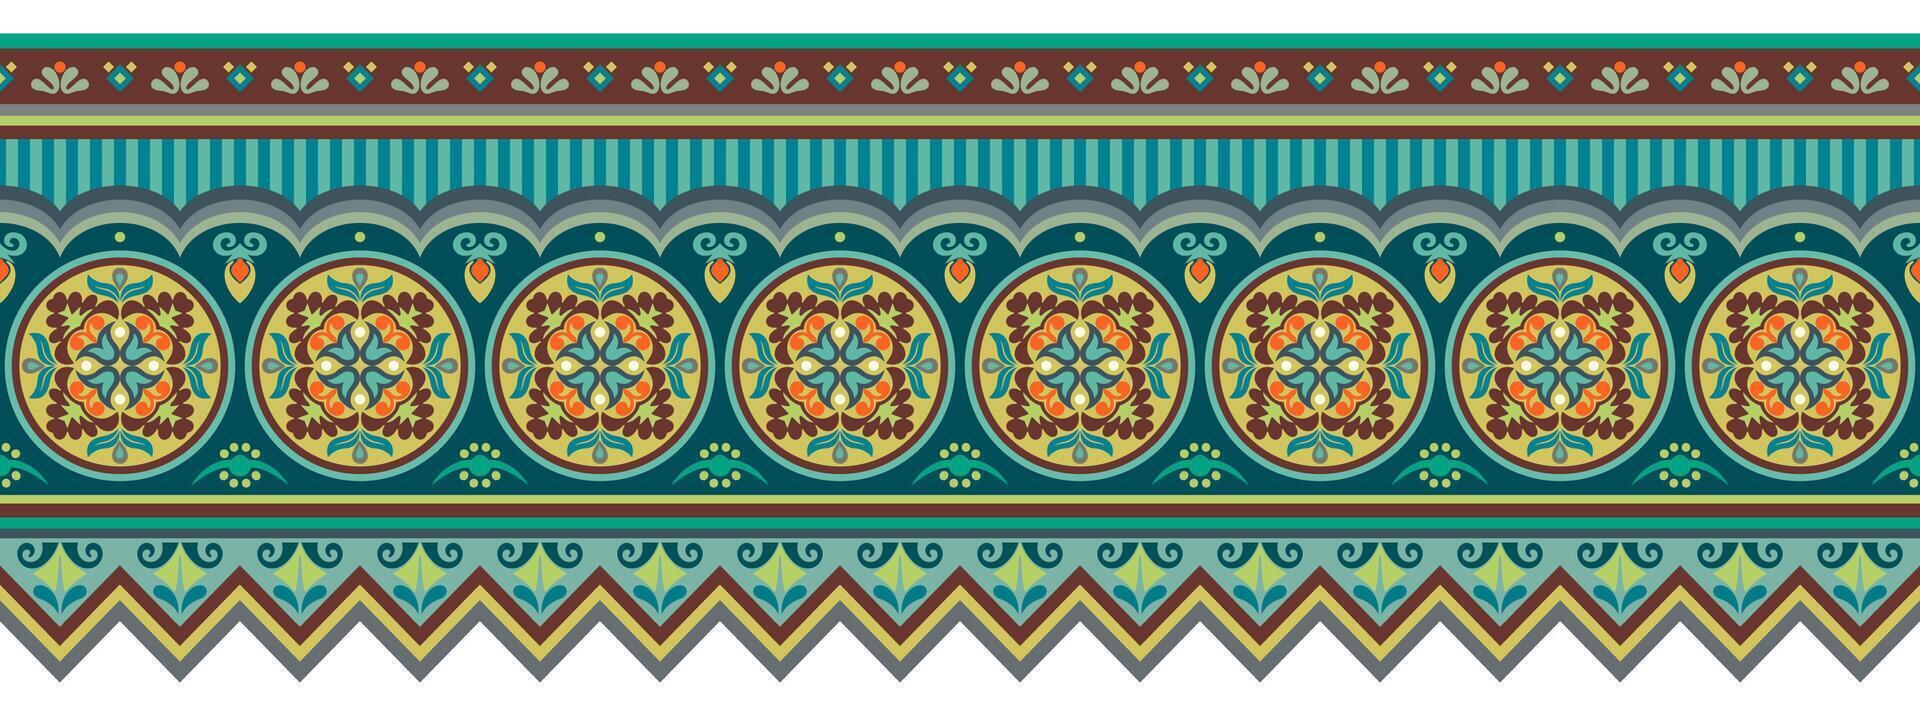 abstrakt etnisk mönster, dekorativ bakgrund vektor